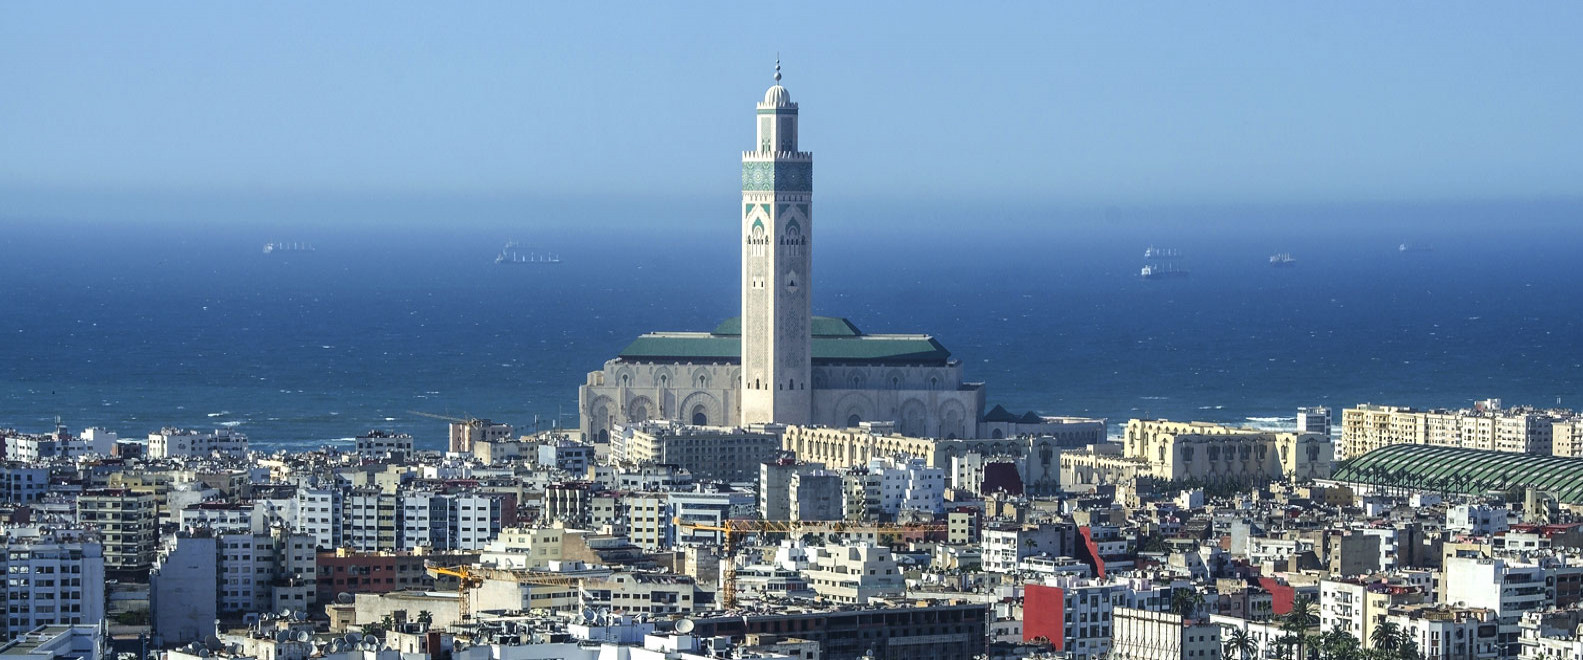 Moroccan companies bid to build Casablanca’s desalination plant